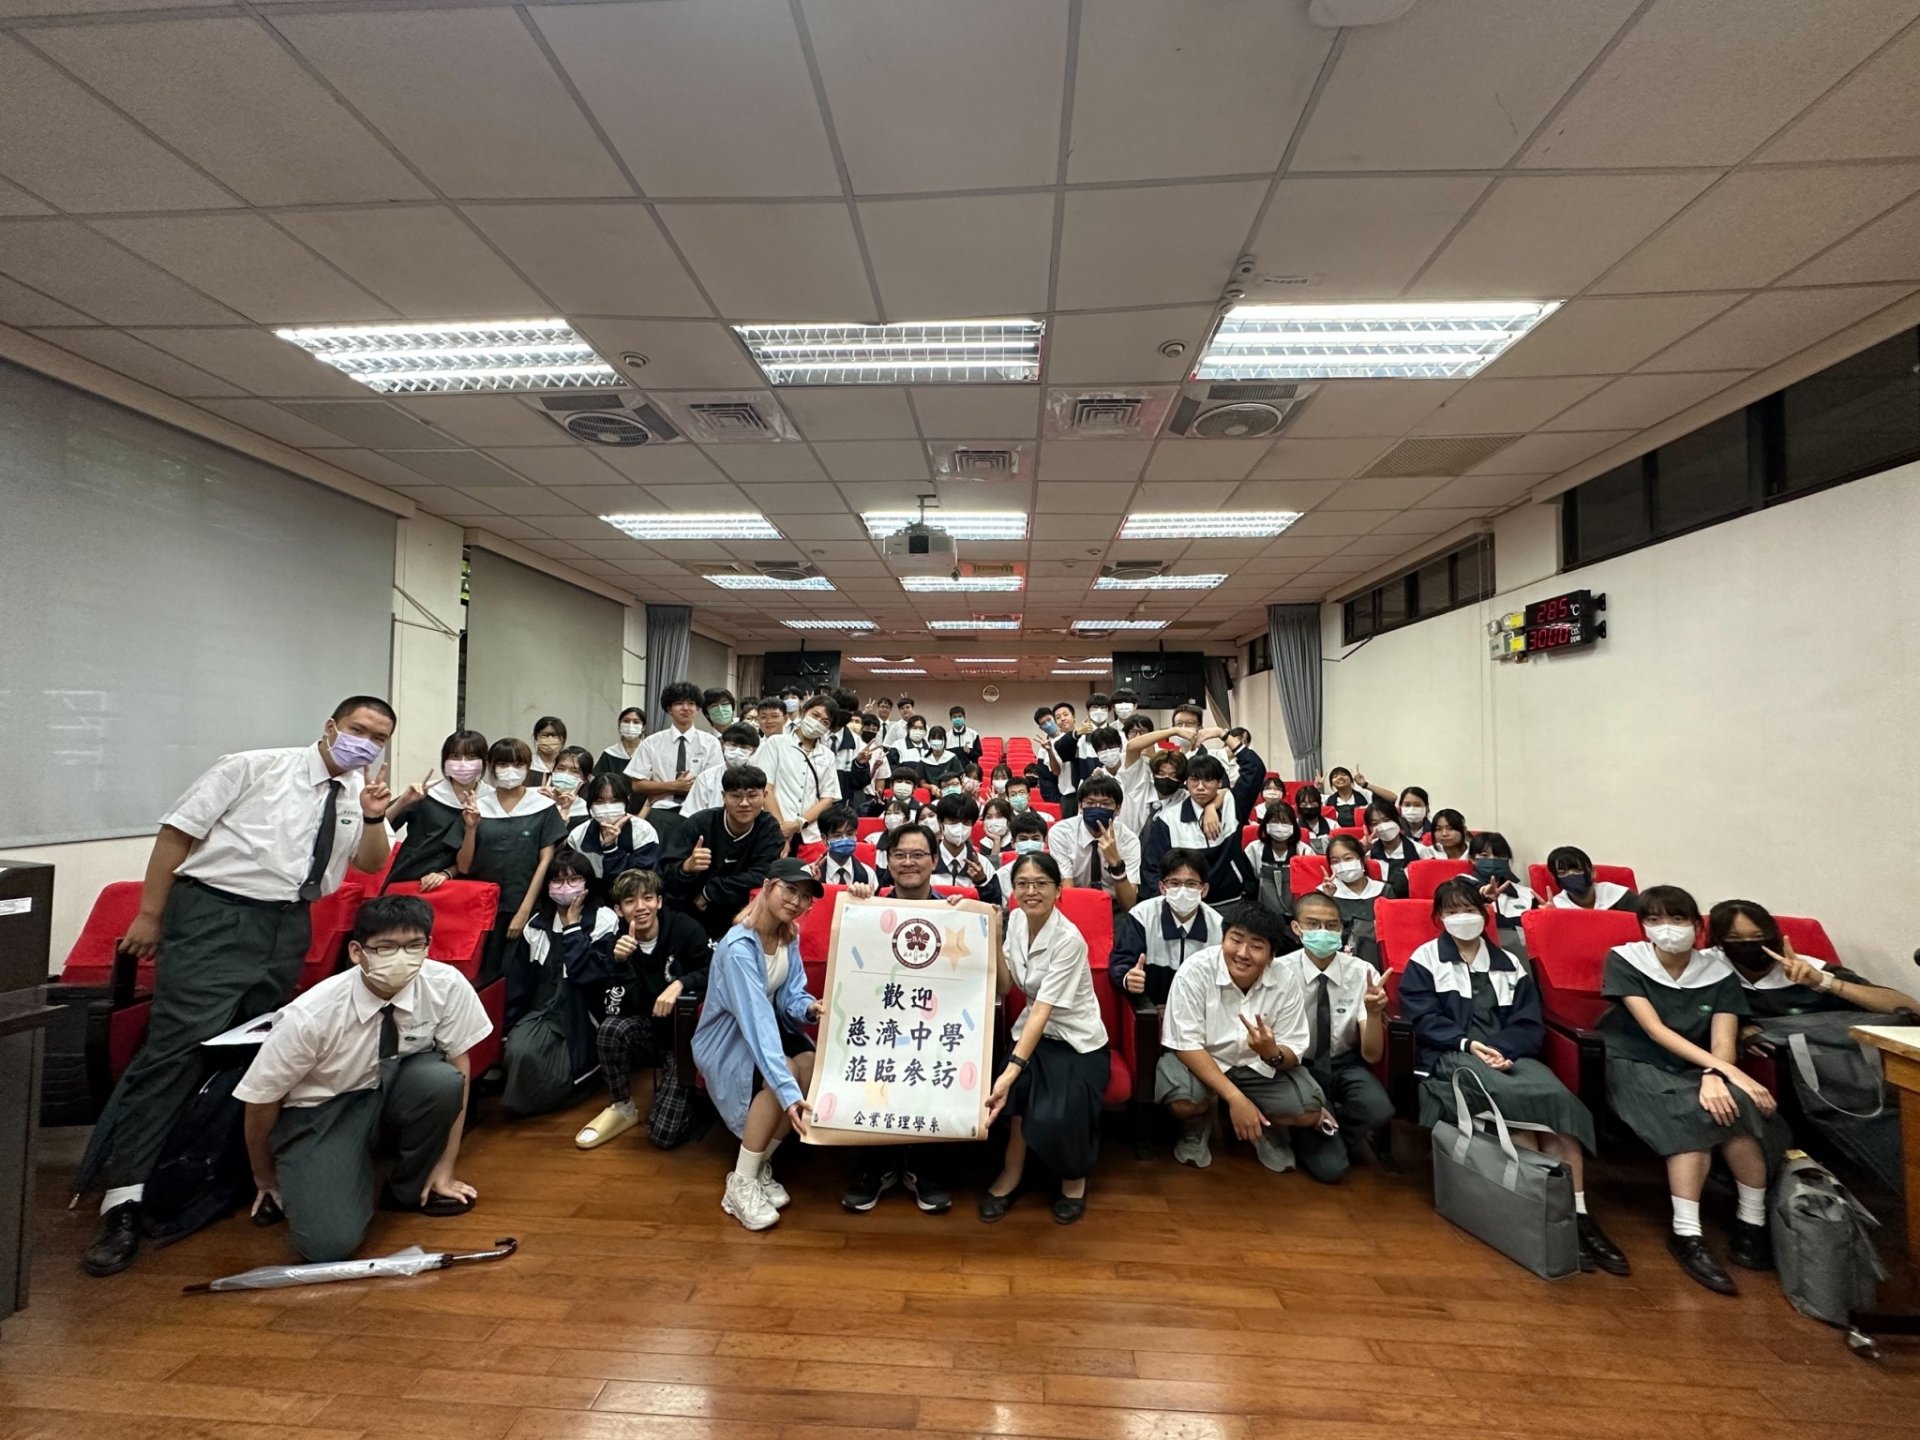 臺南慈中學生在成大企管系林佑鴻助理教授與系學會的互動下，進行了一場活潑有趣的校際交流。